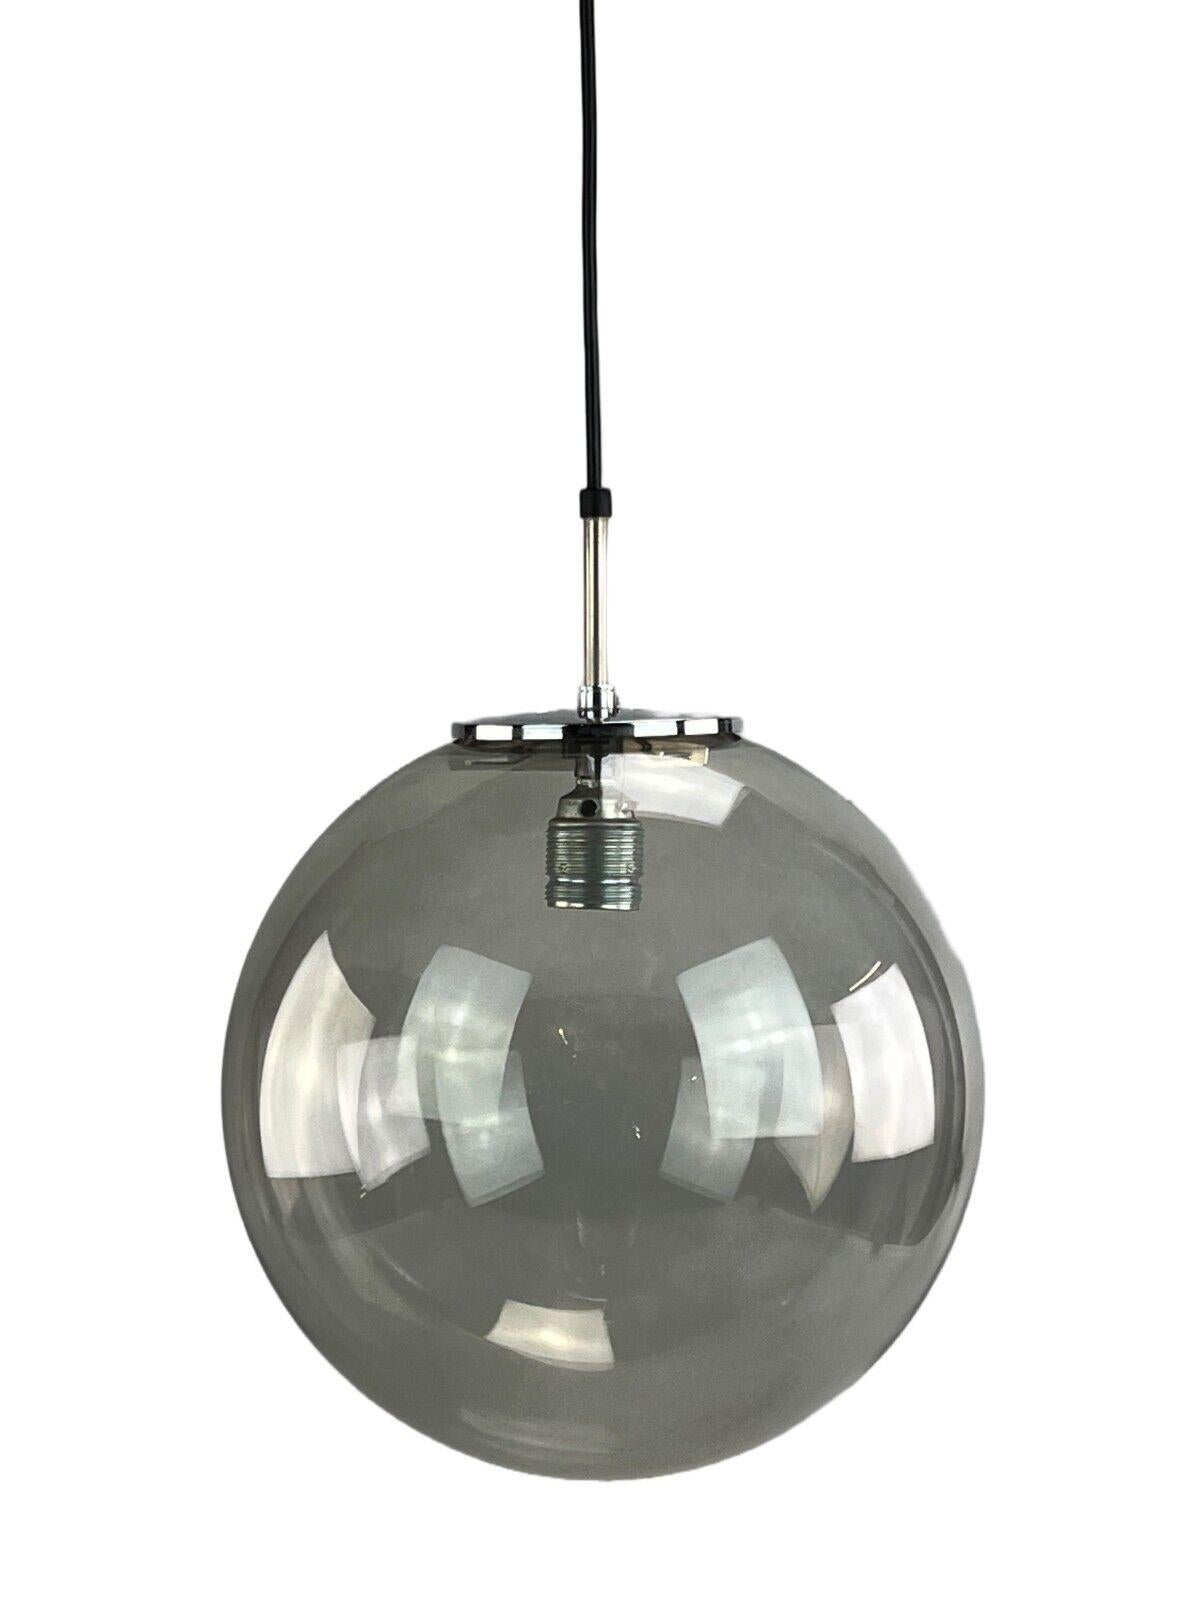 1960s-1970s lamp ceiling lamp Limburg 